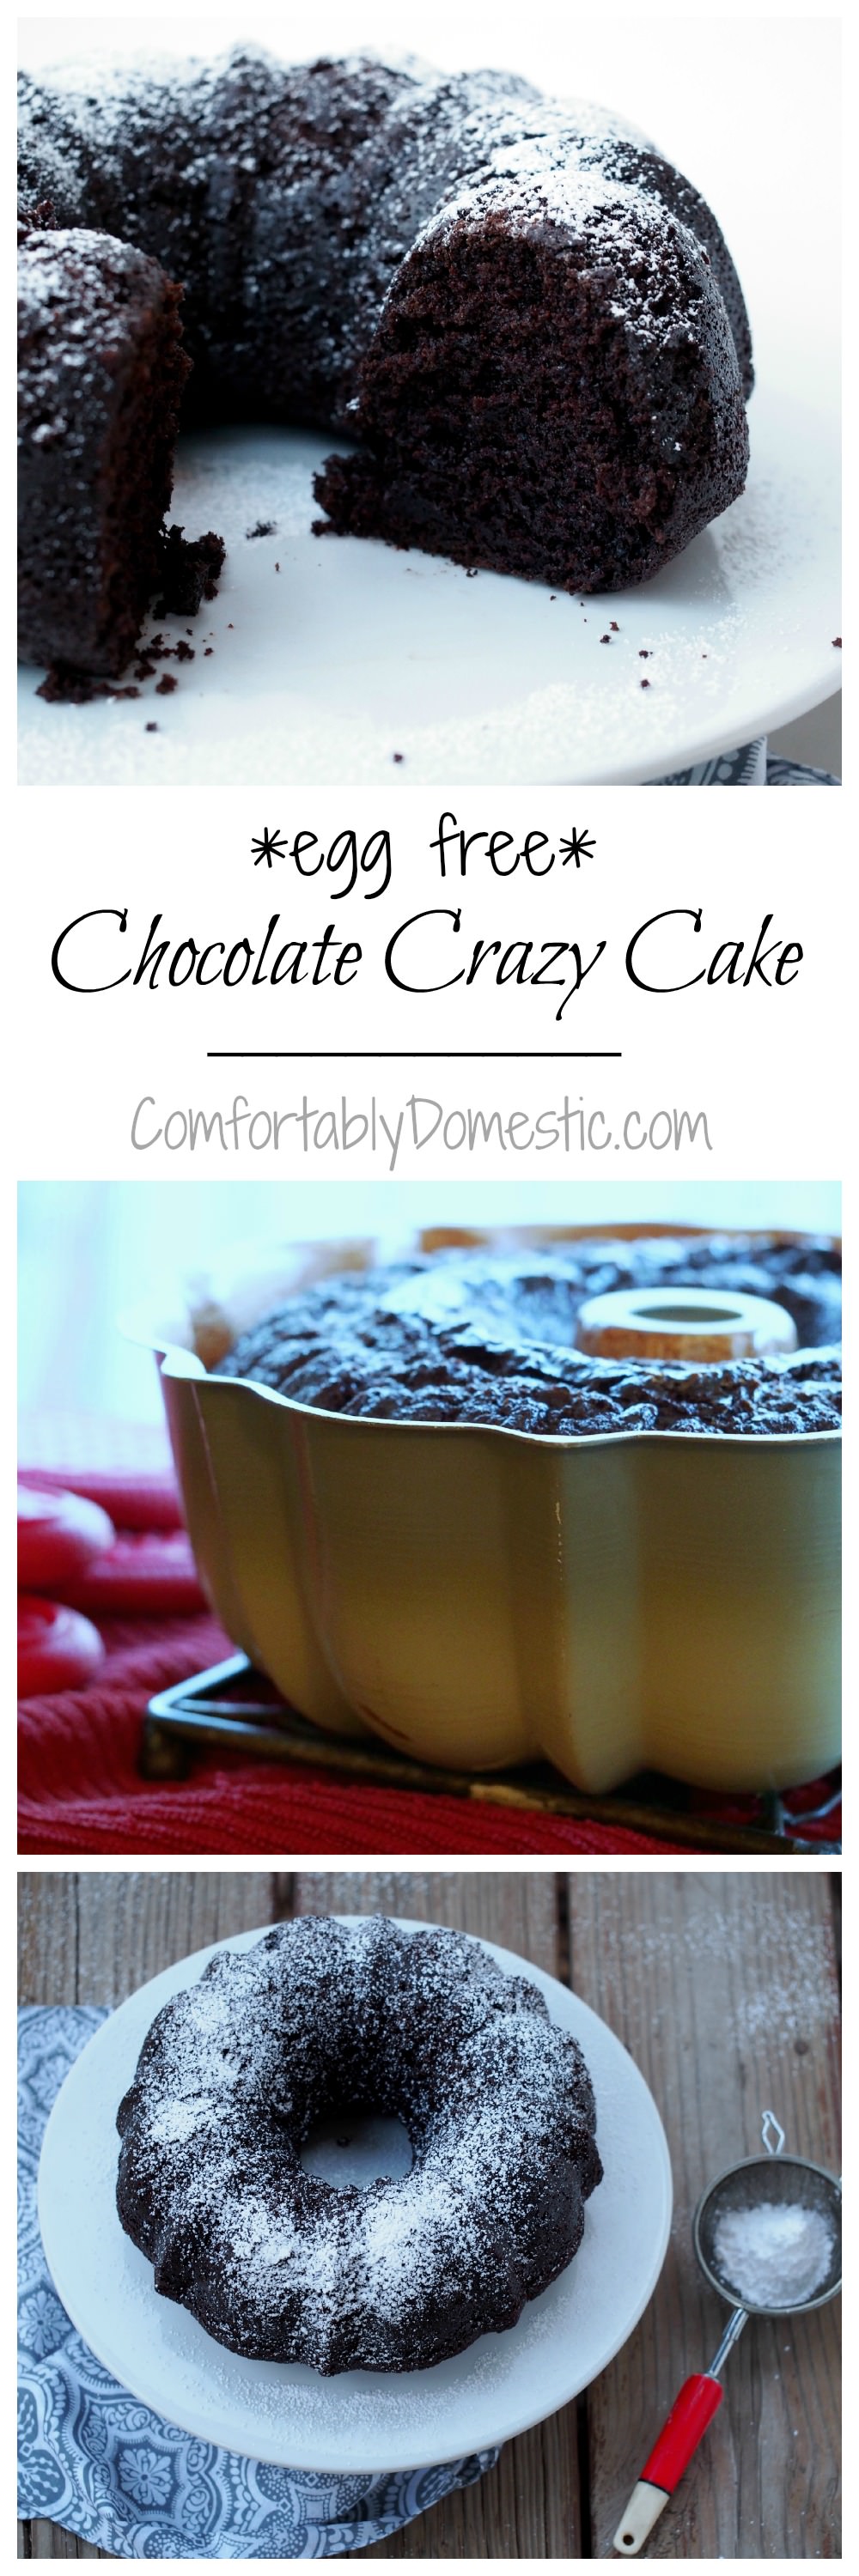 Chocolate-Egg-Free-Crazy-Cake | ComfortablyDomestic.com